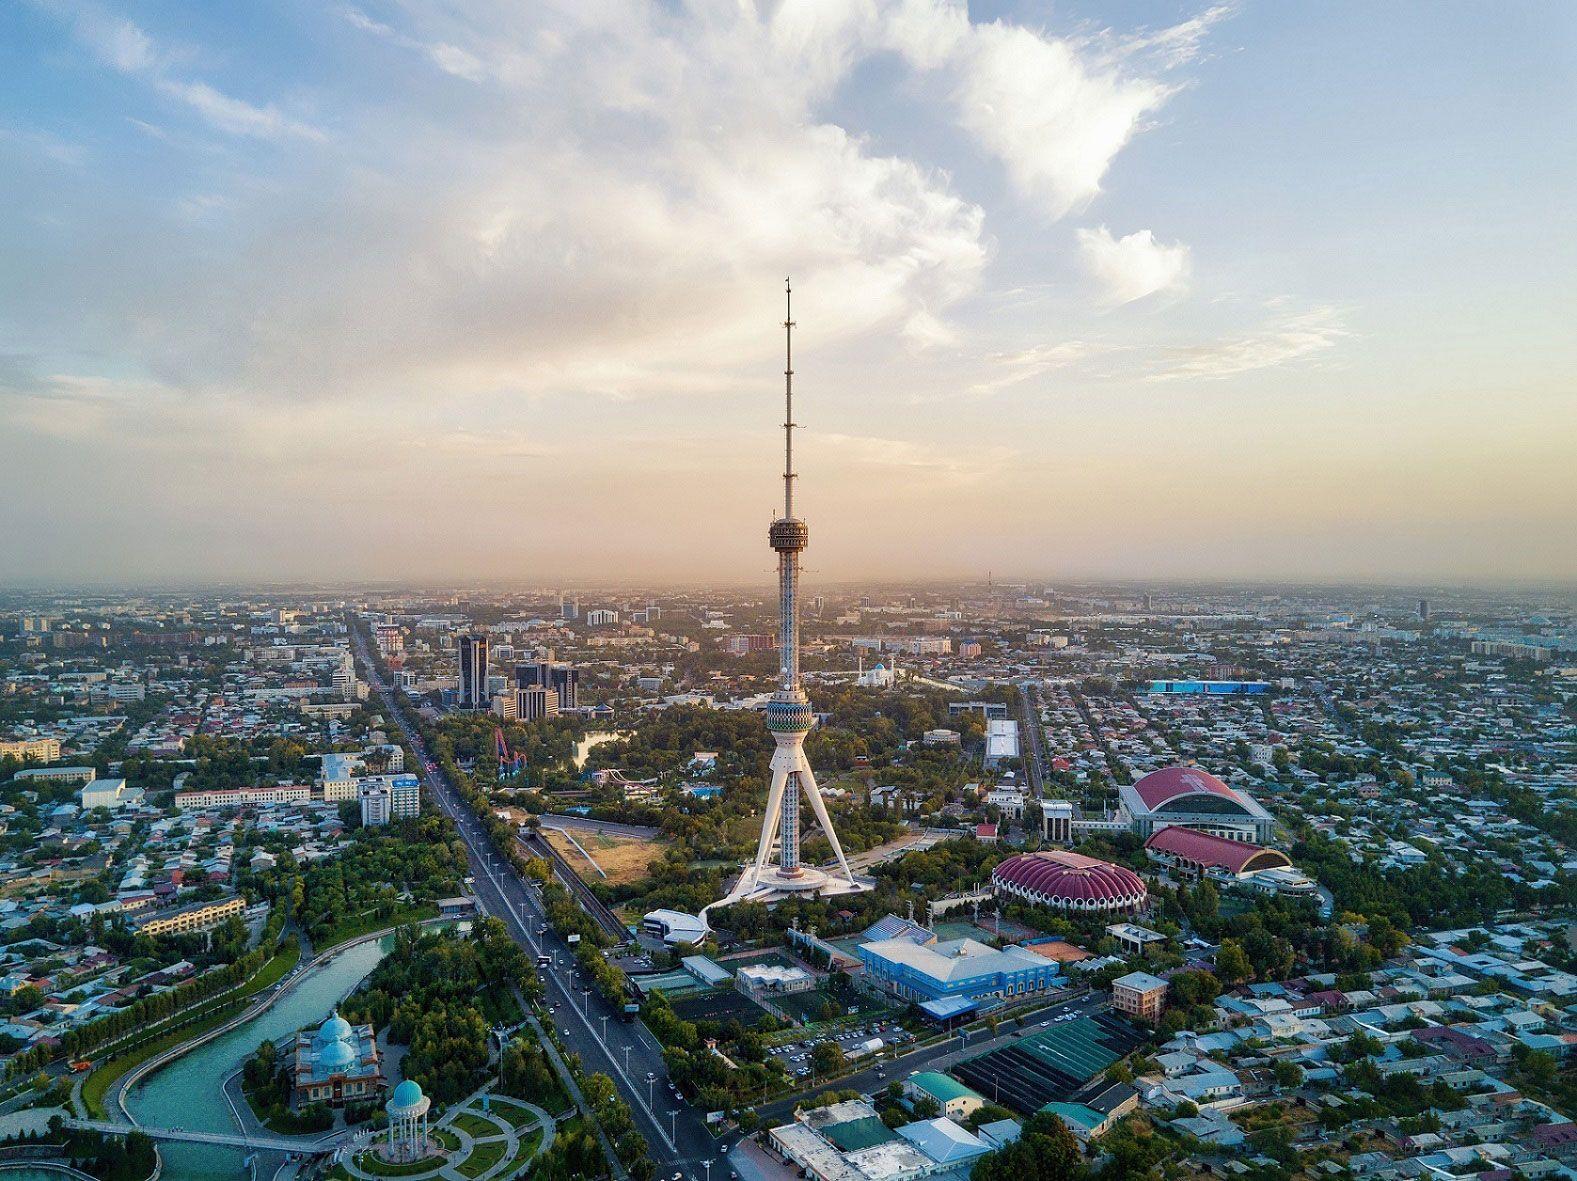 Ташкент занял первое место в списке городов с самым загрязненным воздухом в мире